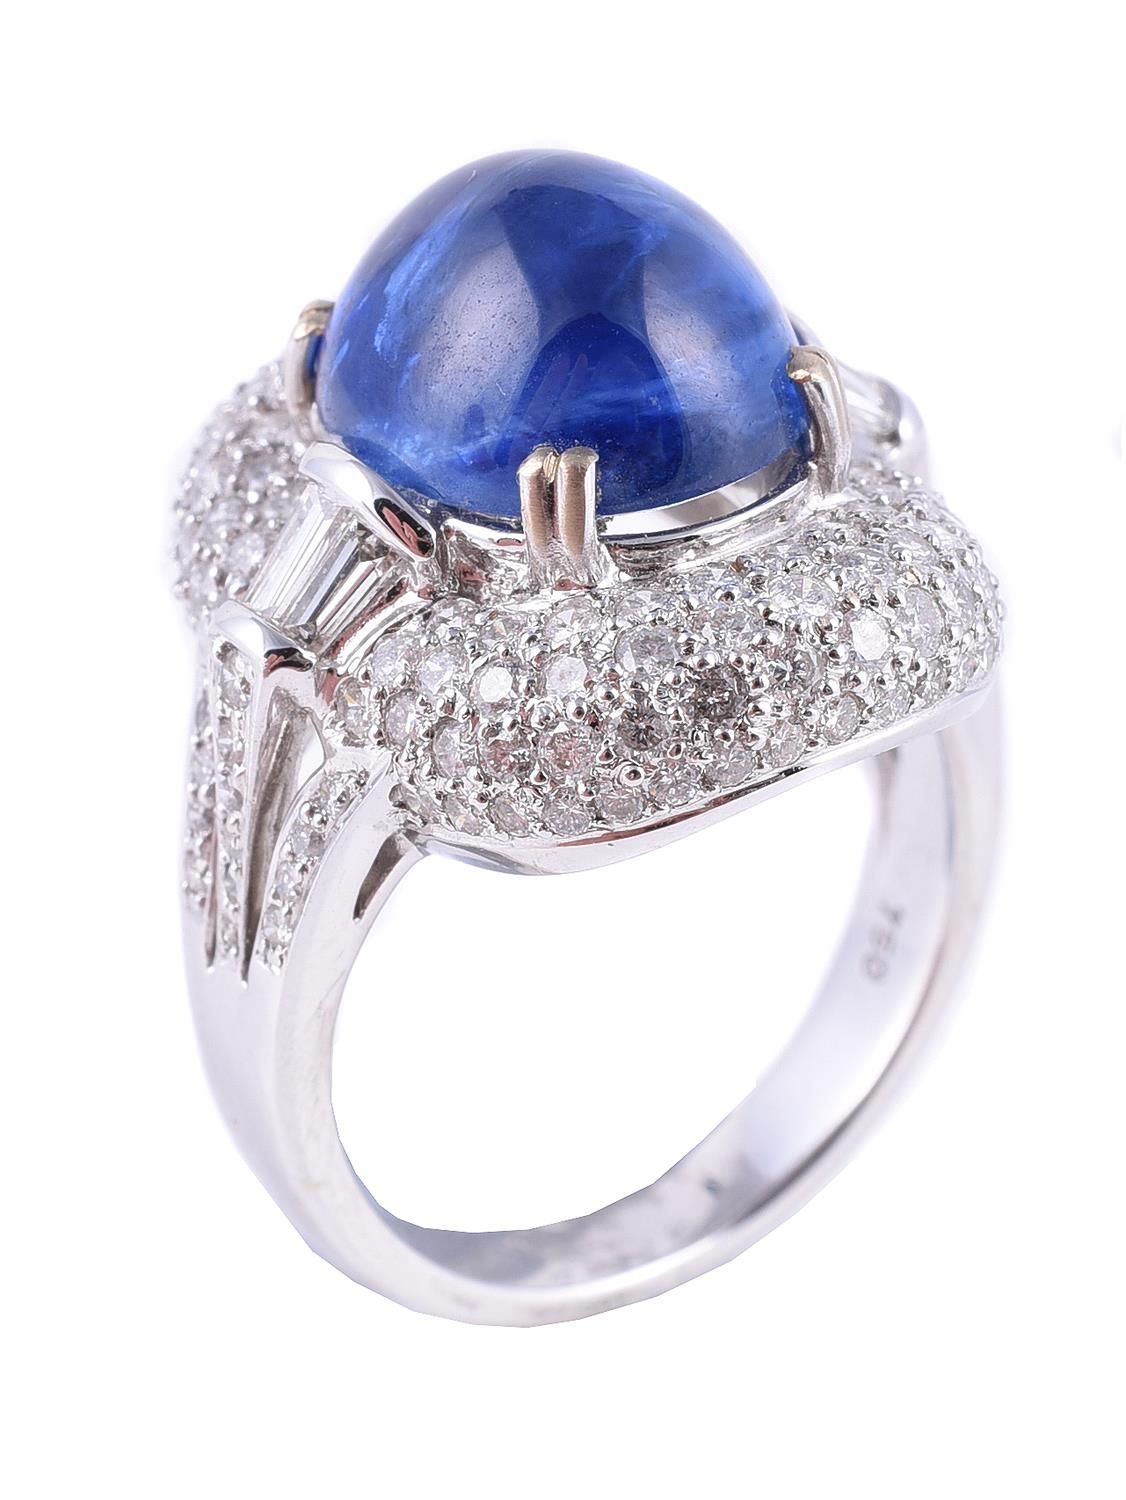 A sapphire and diamond cluster dress ring 蓝宝石和钻石戒指，椭圆形凸圆形蓝宝石镶嵌在密镶的明亮式切割钻石周围，锥形长方&hellip;